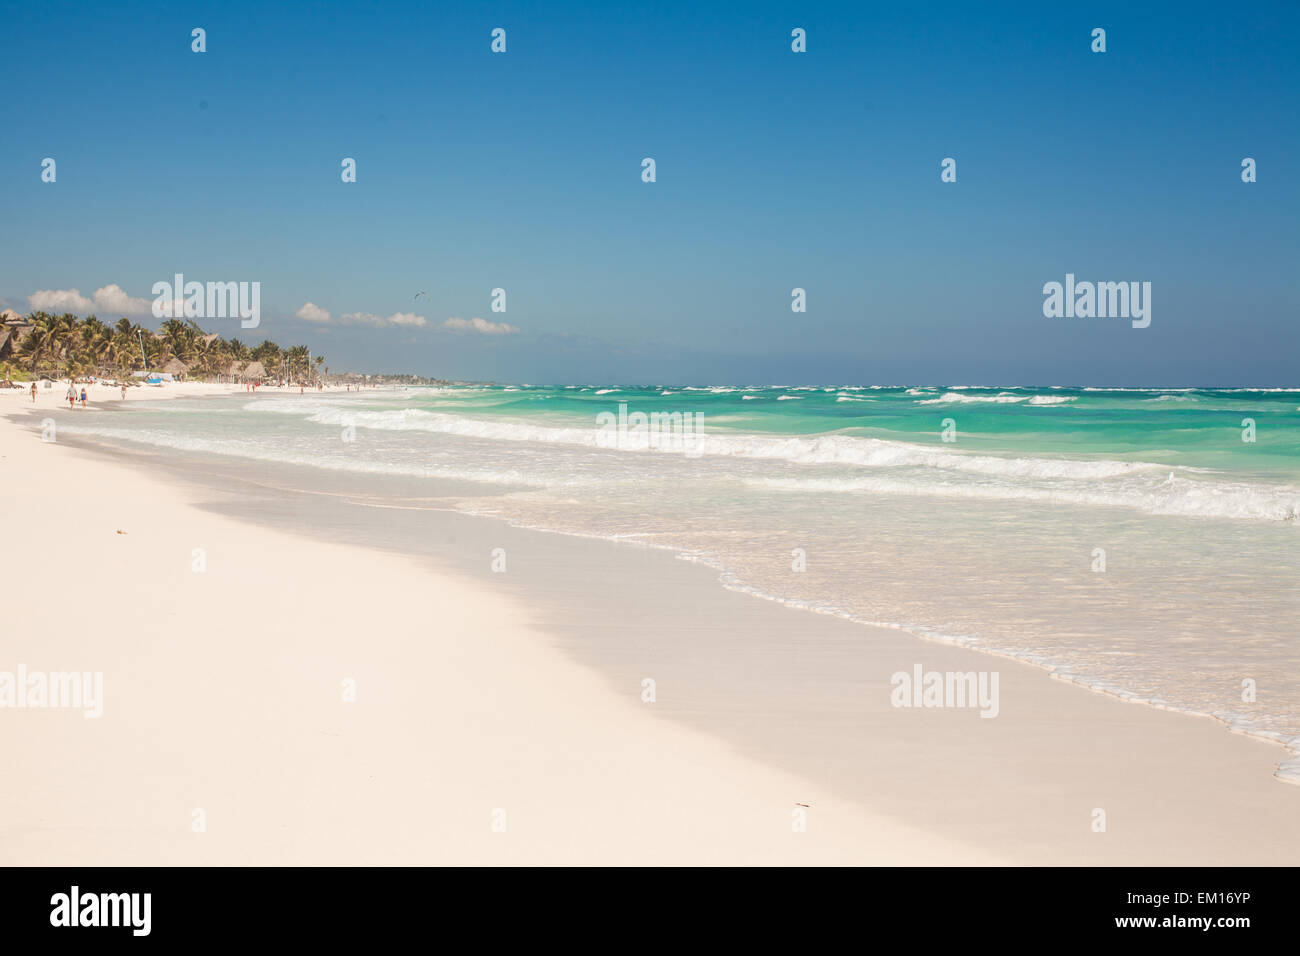 Plage tropical parfait avec de l'eau turquoise et des plages de sable blanc de Tulum, Mexique Banque D'Images